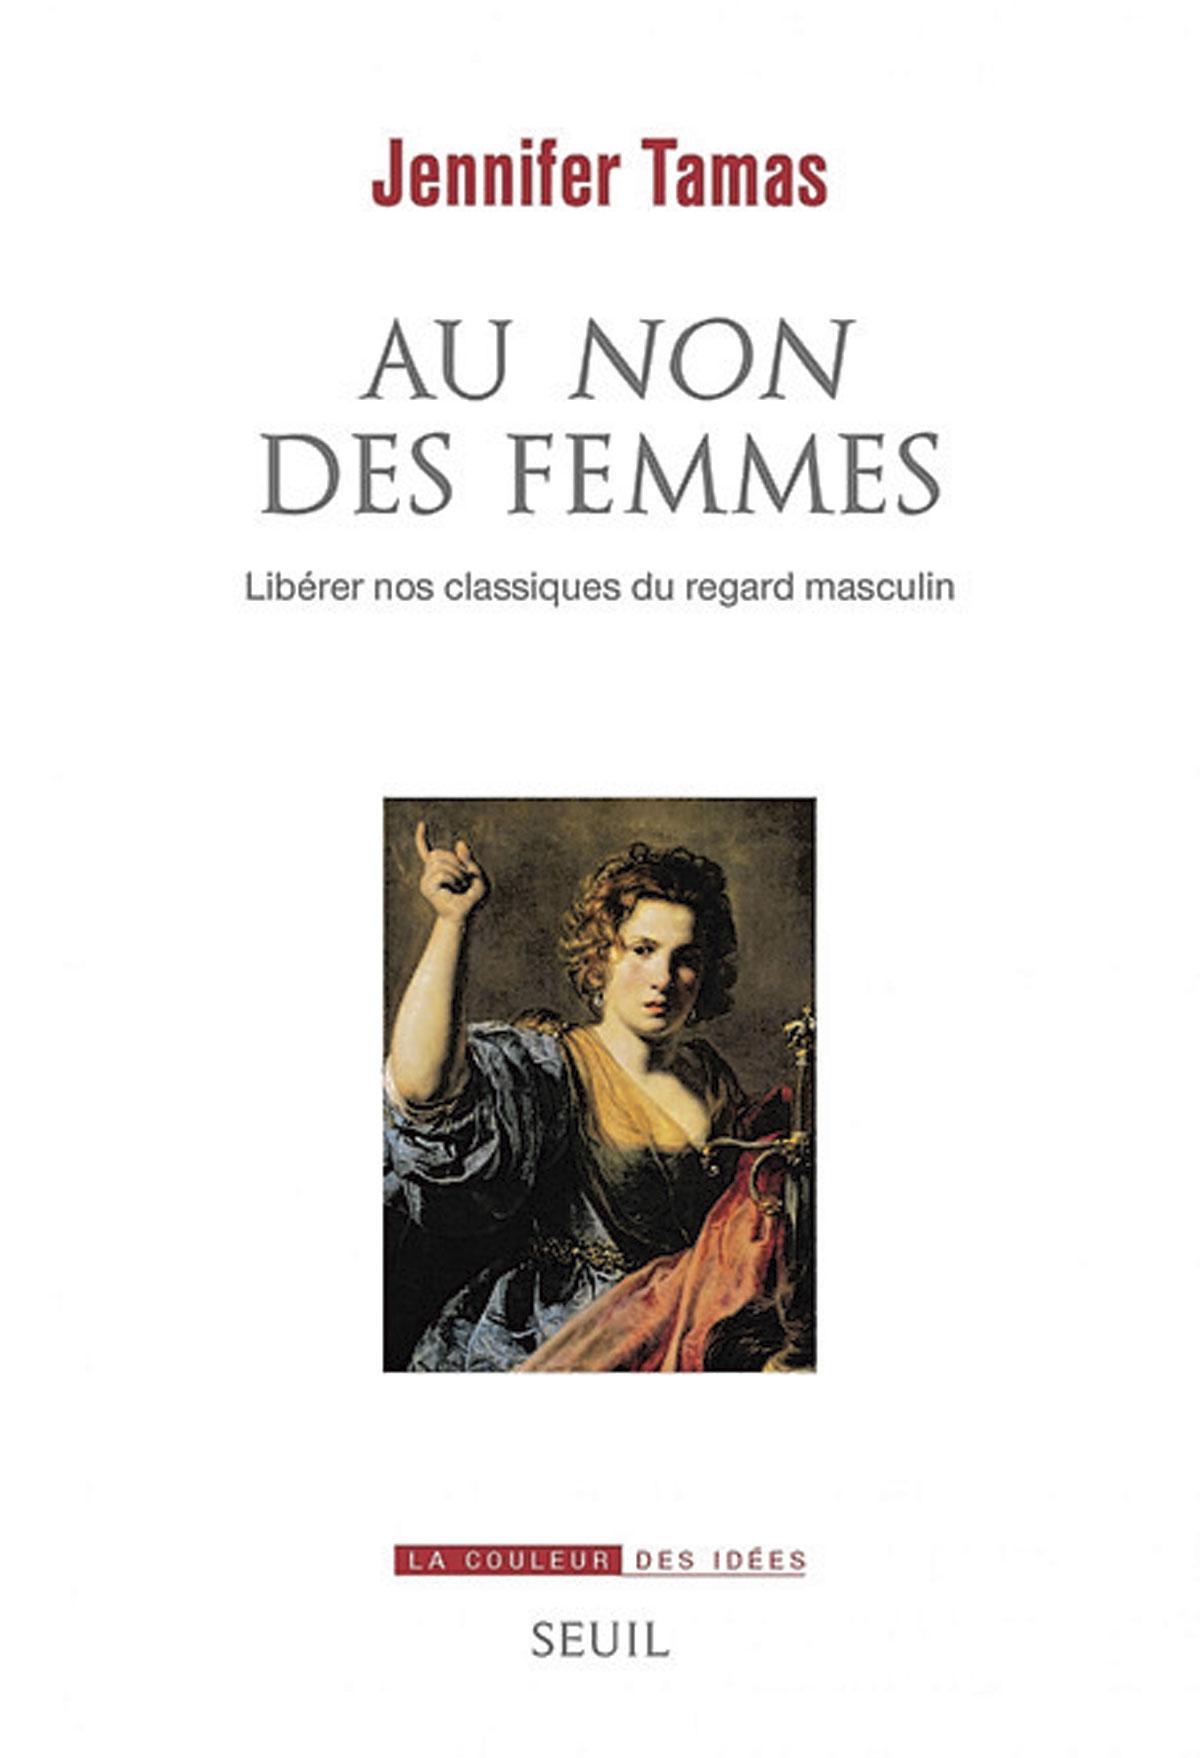 (1) Au non des femmes. Libérer nos classiques du regard masculin, par Jennifer Tamas, Seuil, 336 p.